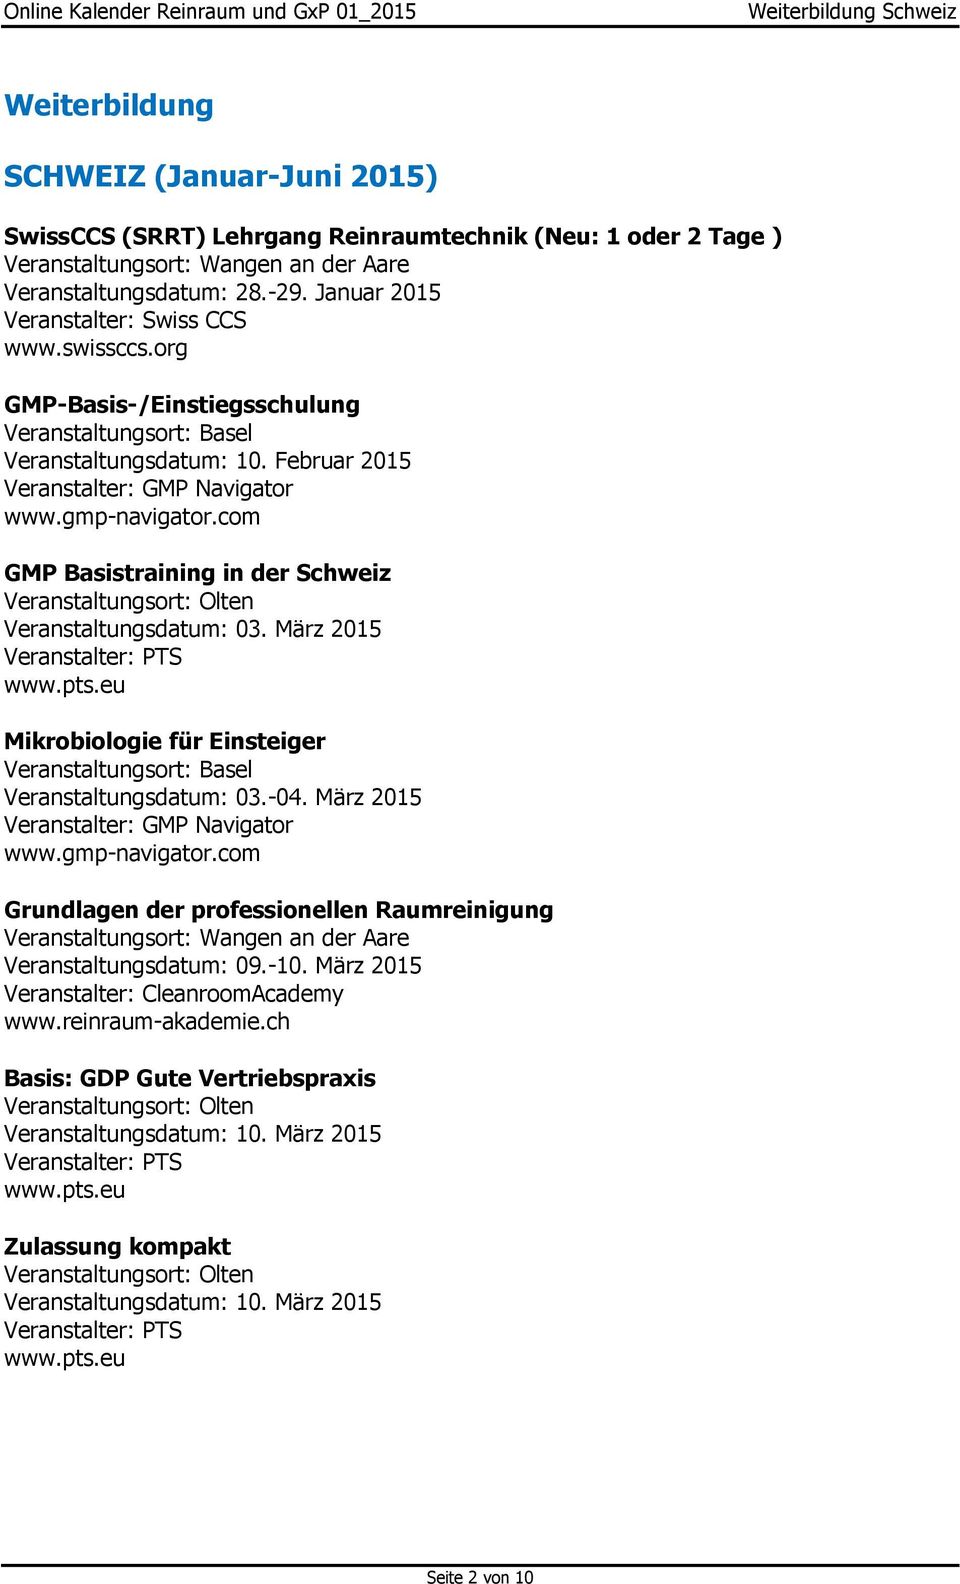 Februar 2015 Veranstalter: GMP Navigator GMP Basistraining in der Schweiz Veranstaltungsdatum: 03. März 2015 Mikrobiologie für Einsteiger Veranstaltungsort: Basel Veranstaltungsdatum: 03.-04.